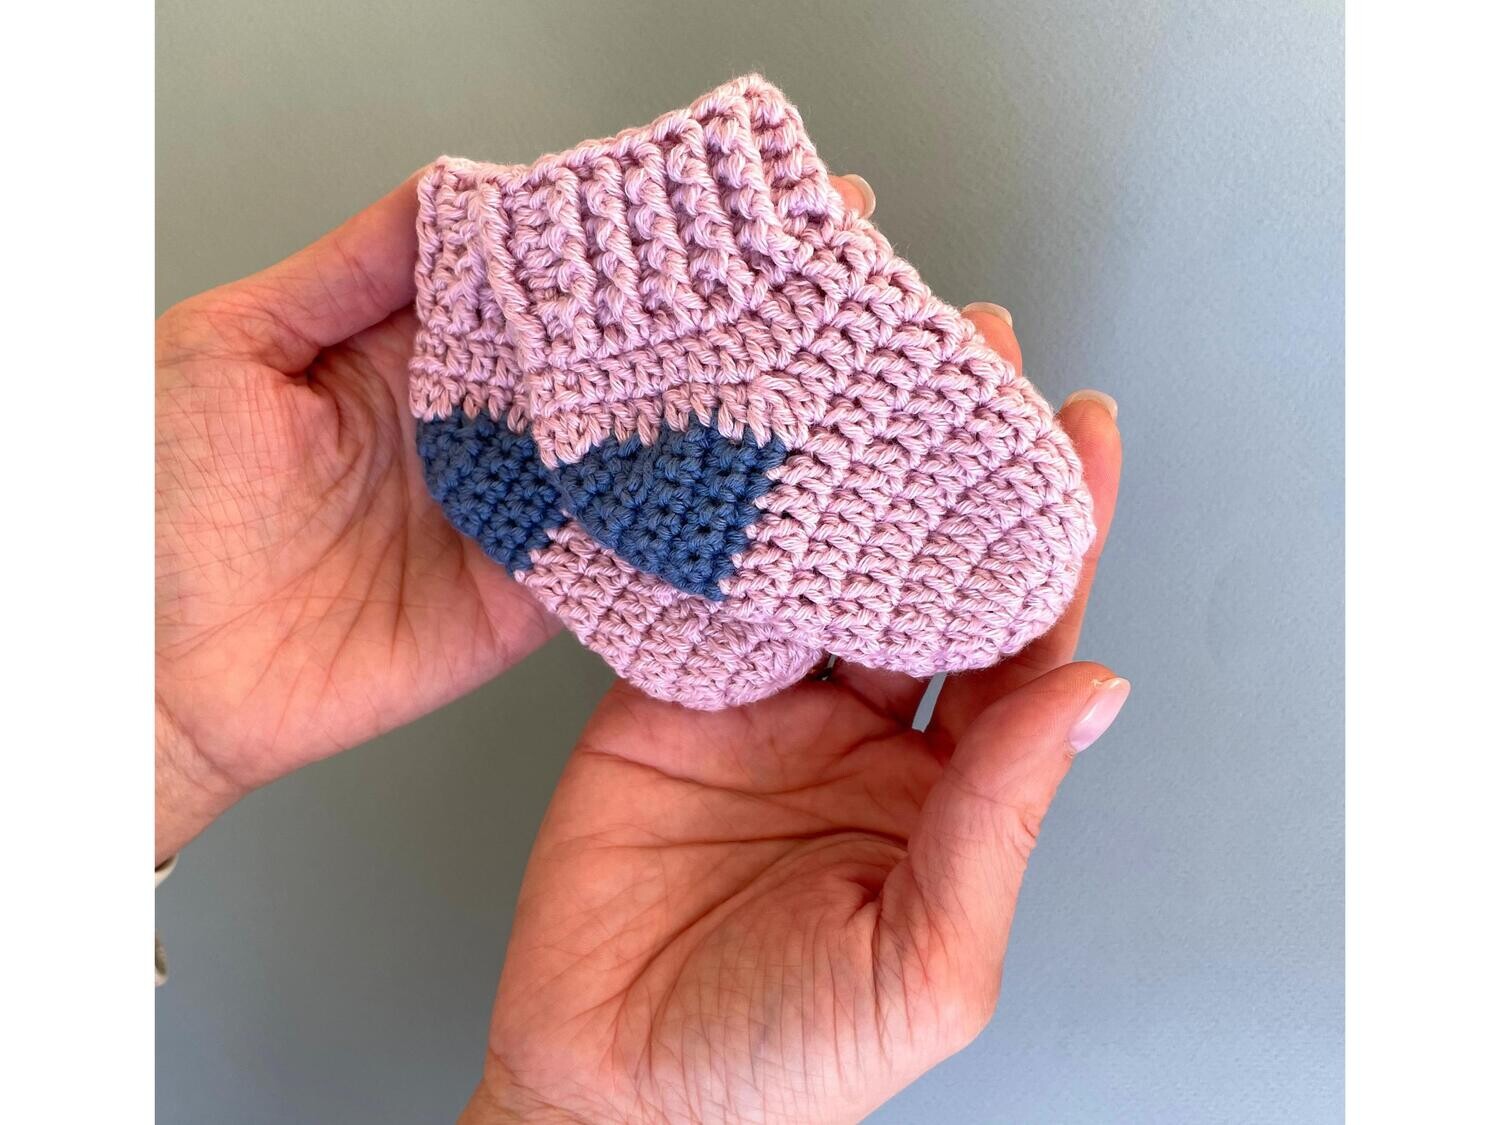 Baby socks crochet pattern for 0-3 months, easy crochet pattern, diy gift for baby, cute little socks